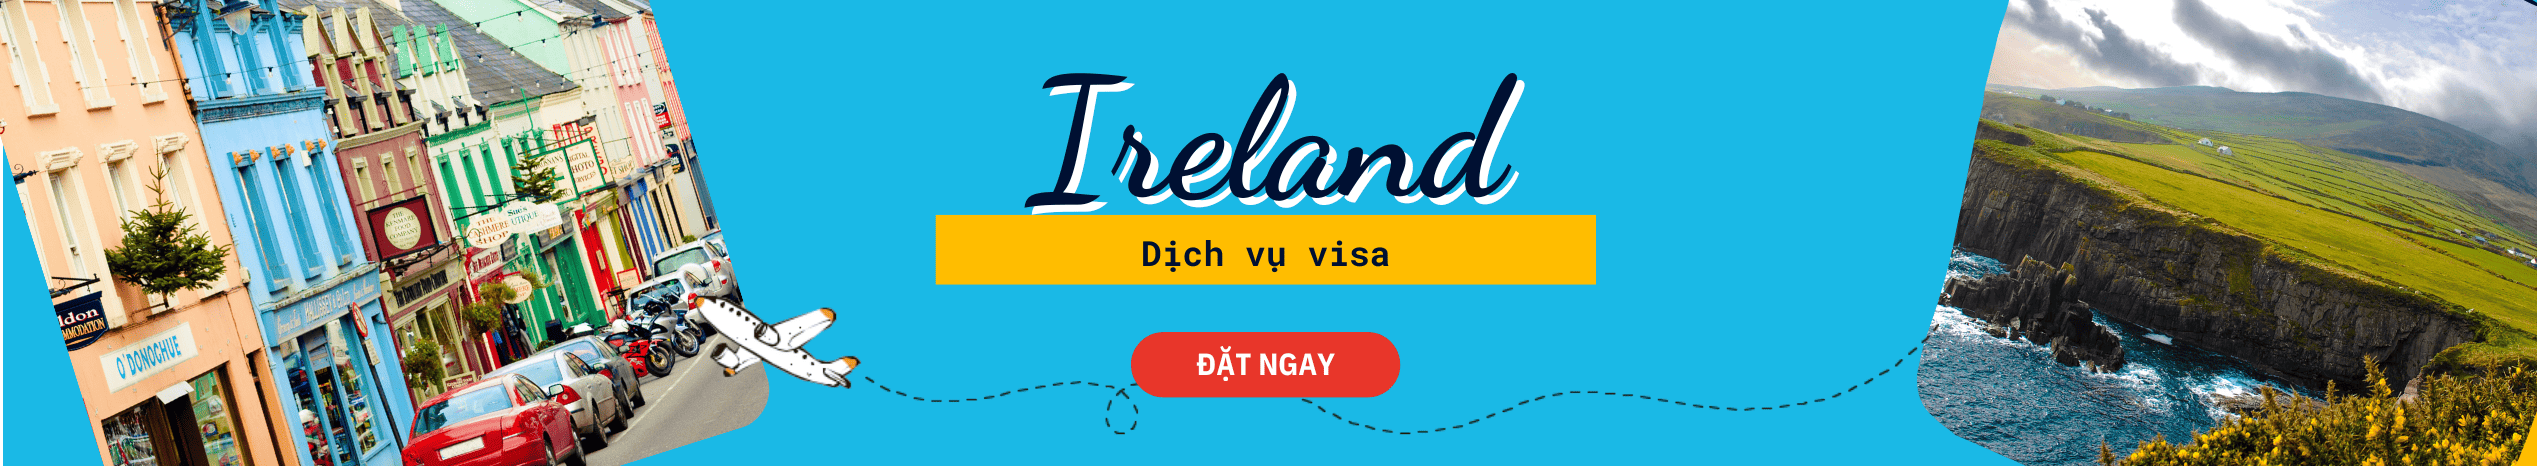 Hỗ trợ làm Visa Ireland trọn gói, nhanh chóng